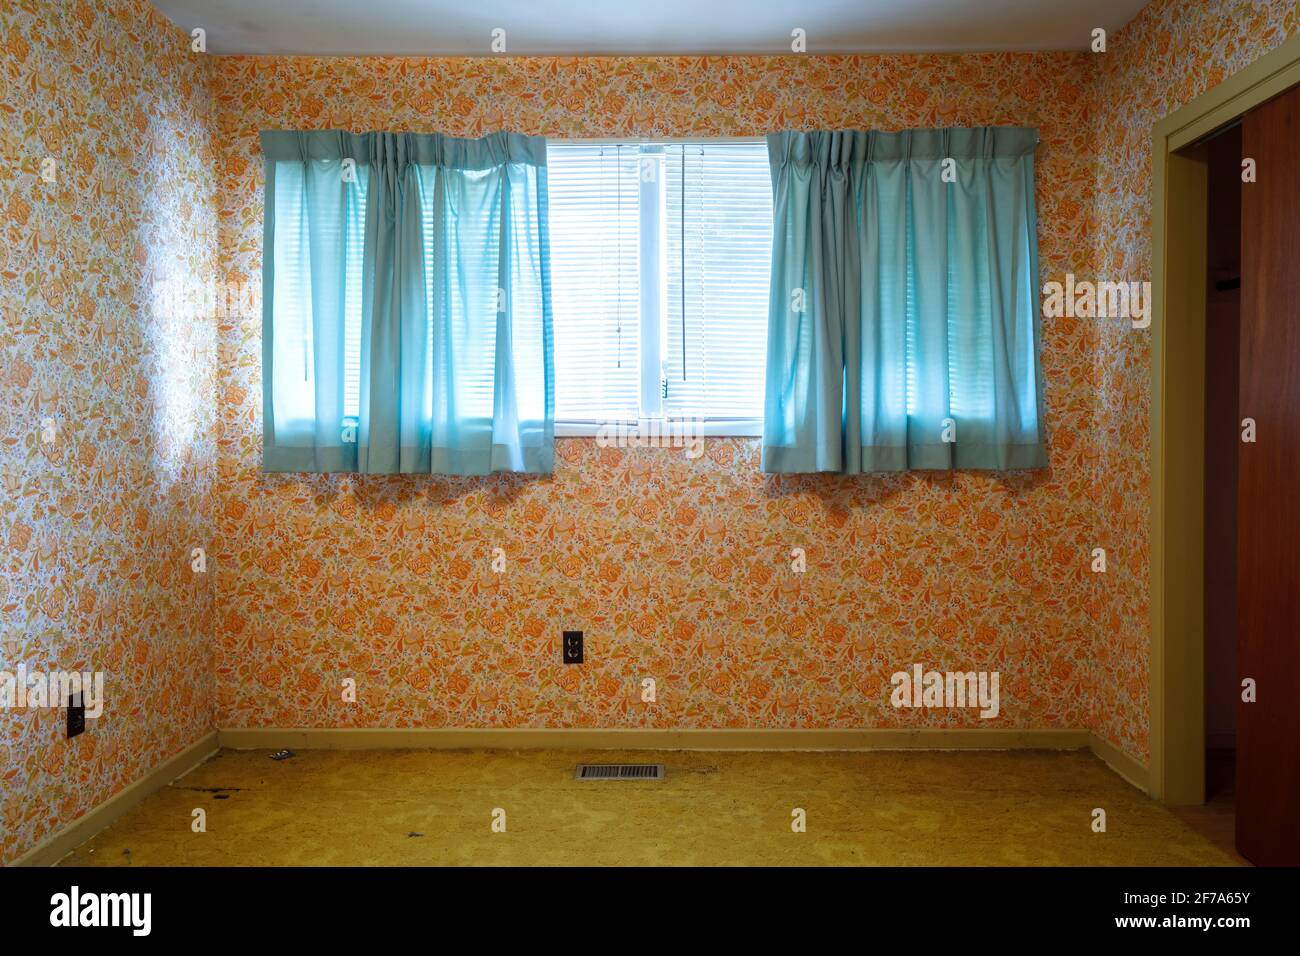 Carta da parati retrò arancione e tende blu a contrasto all'interno di una camera da letto vuota. Foto Stock